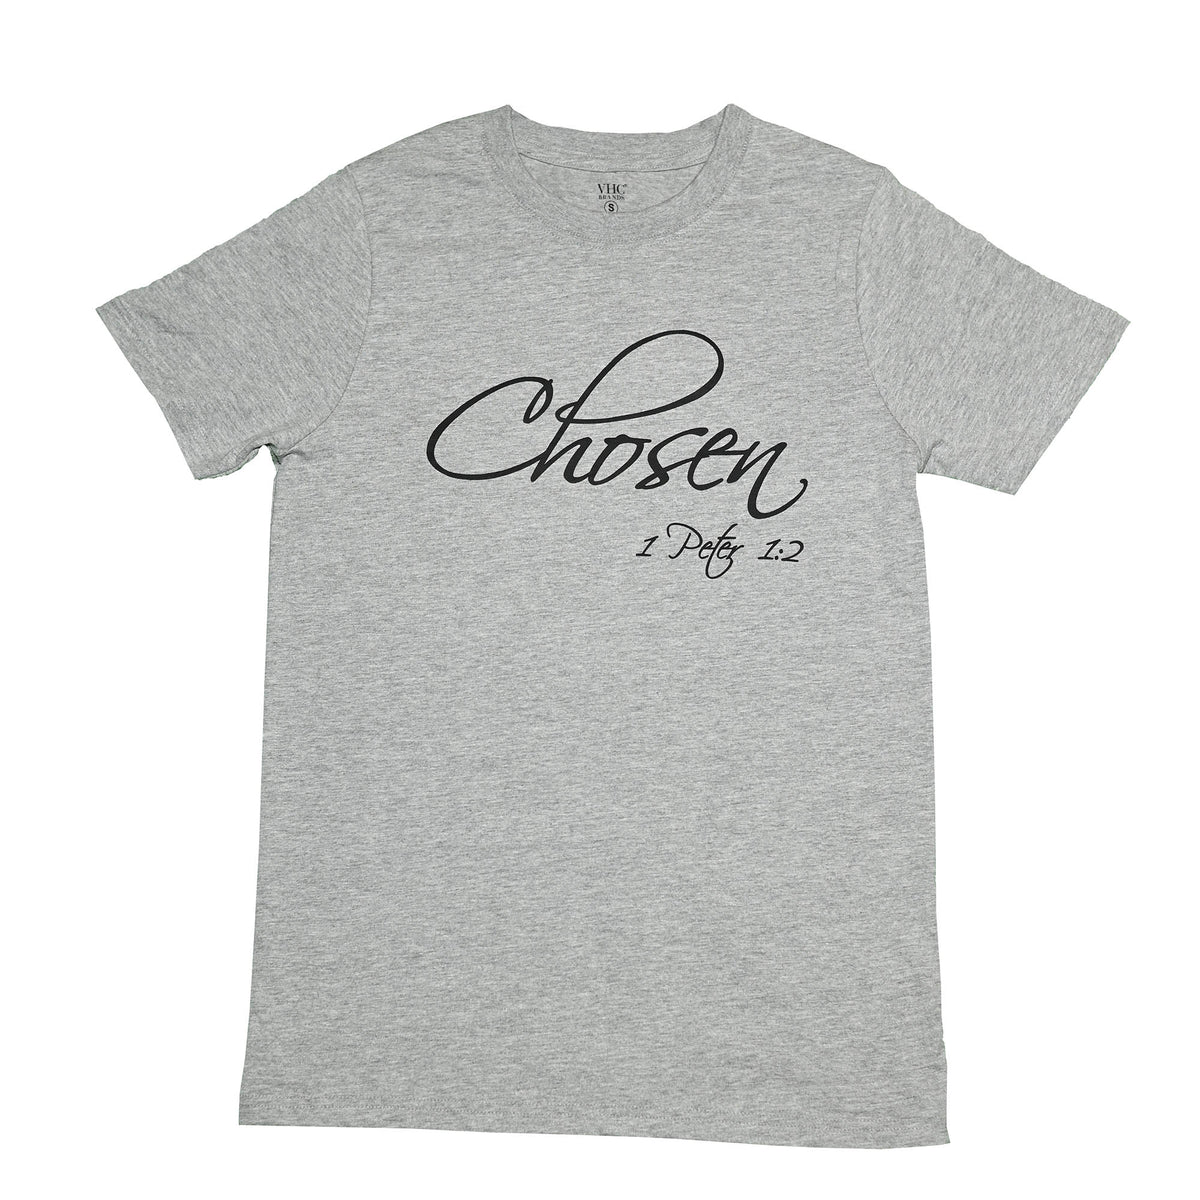 Chosen T-Shirt, Grey Melange